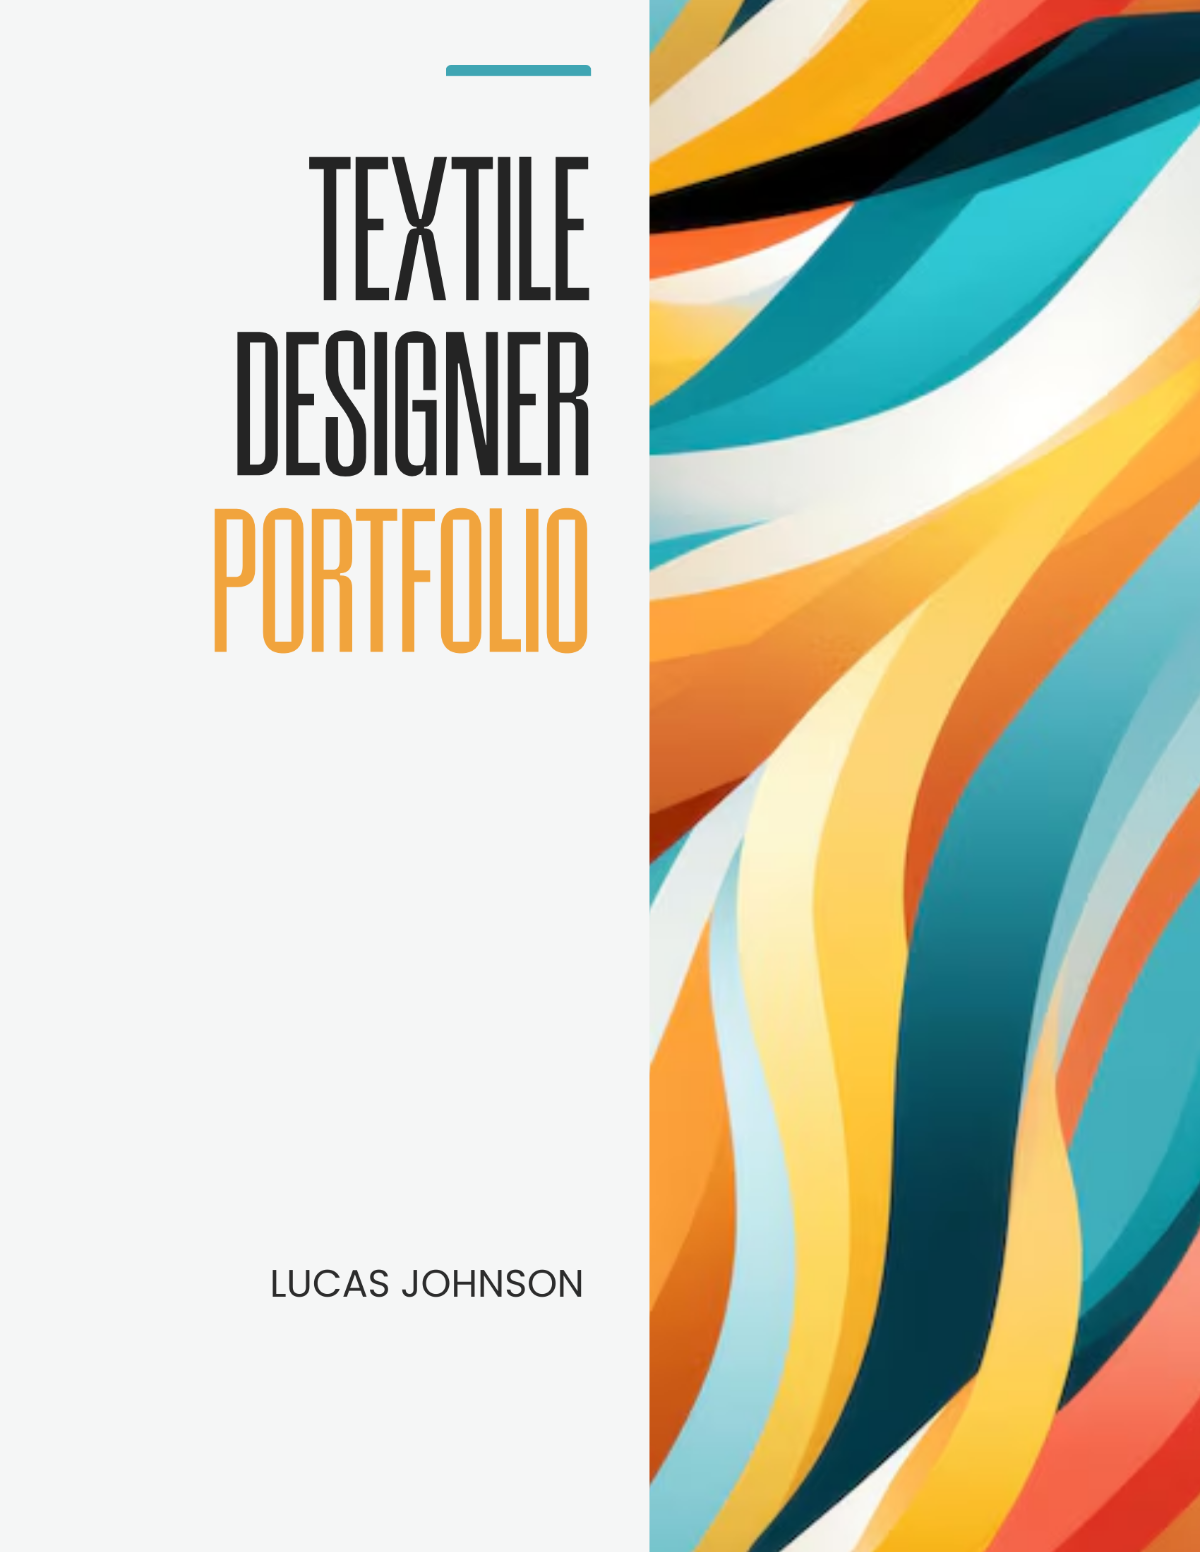 Textile Designer Portfolio